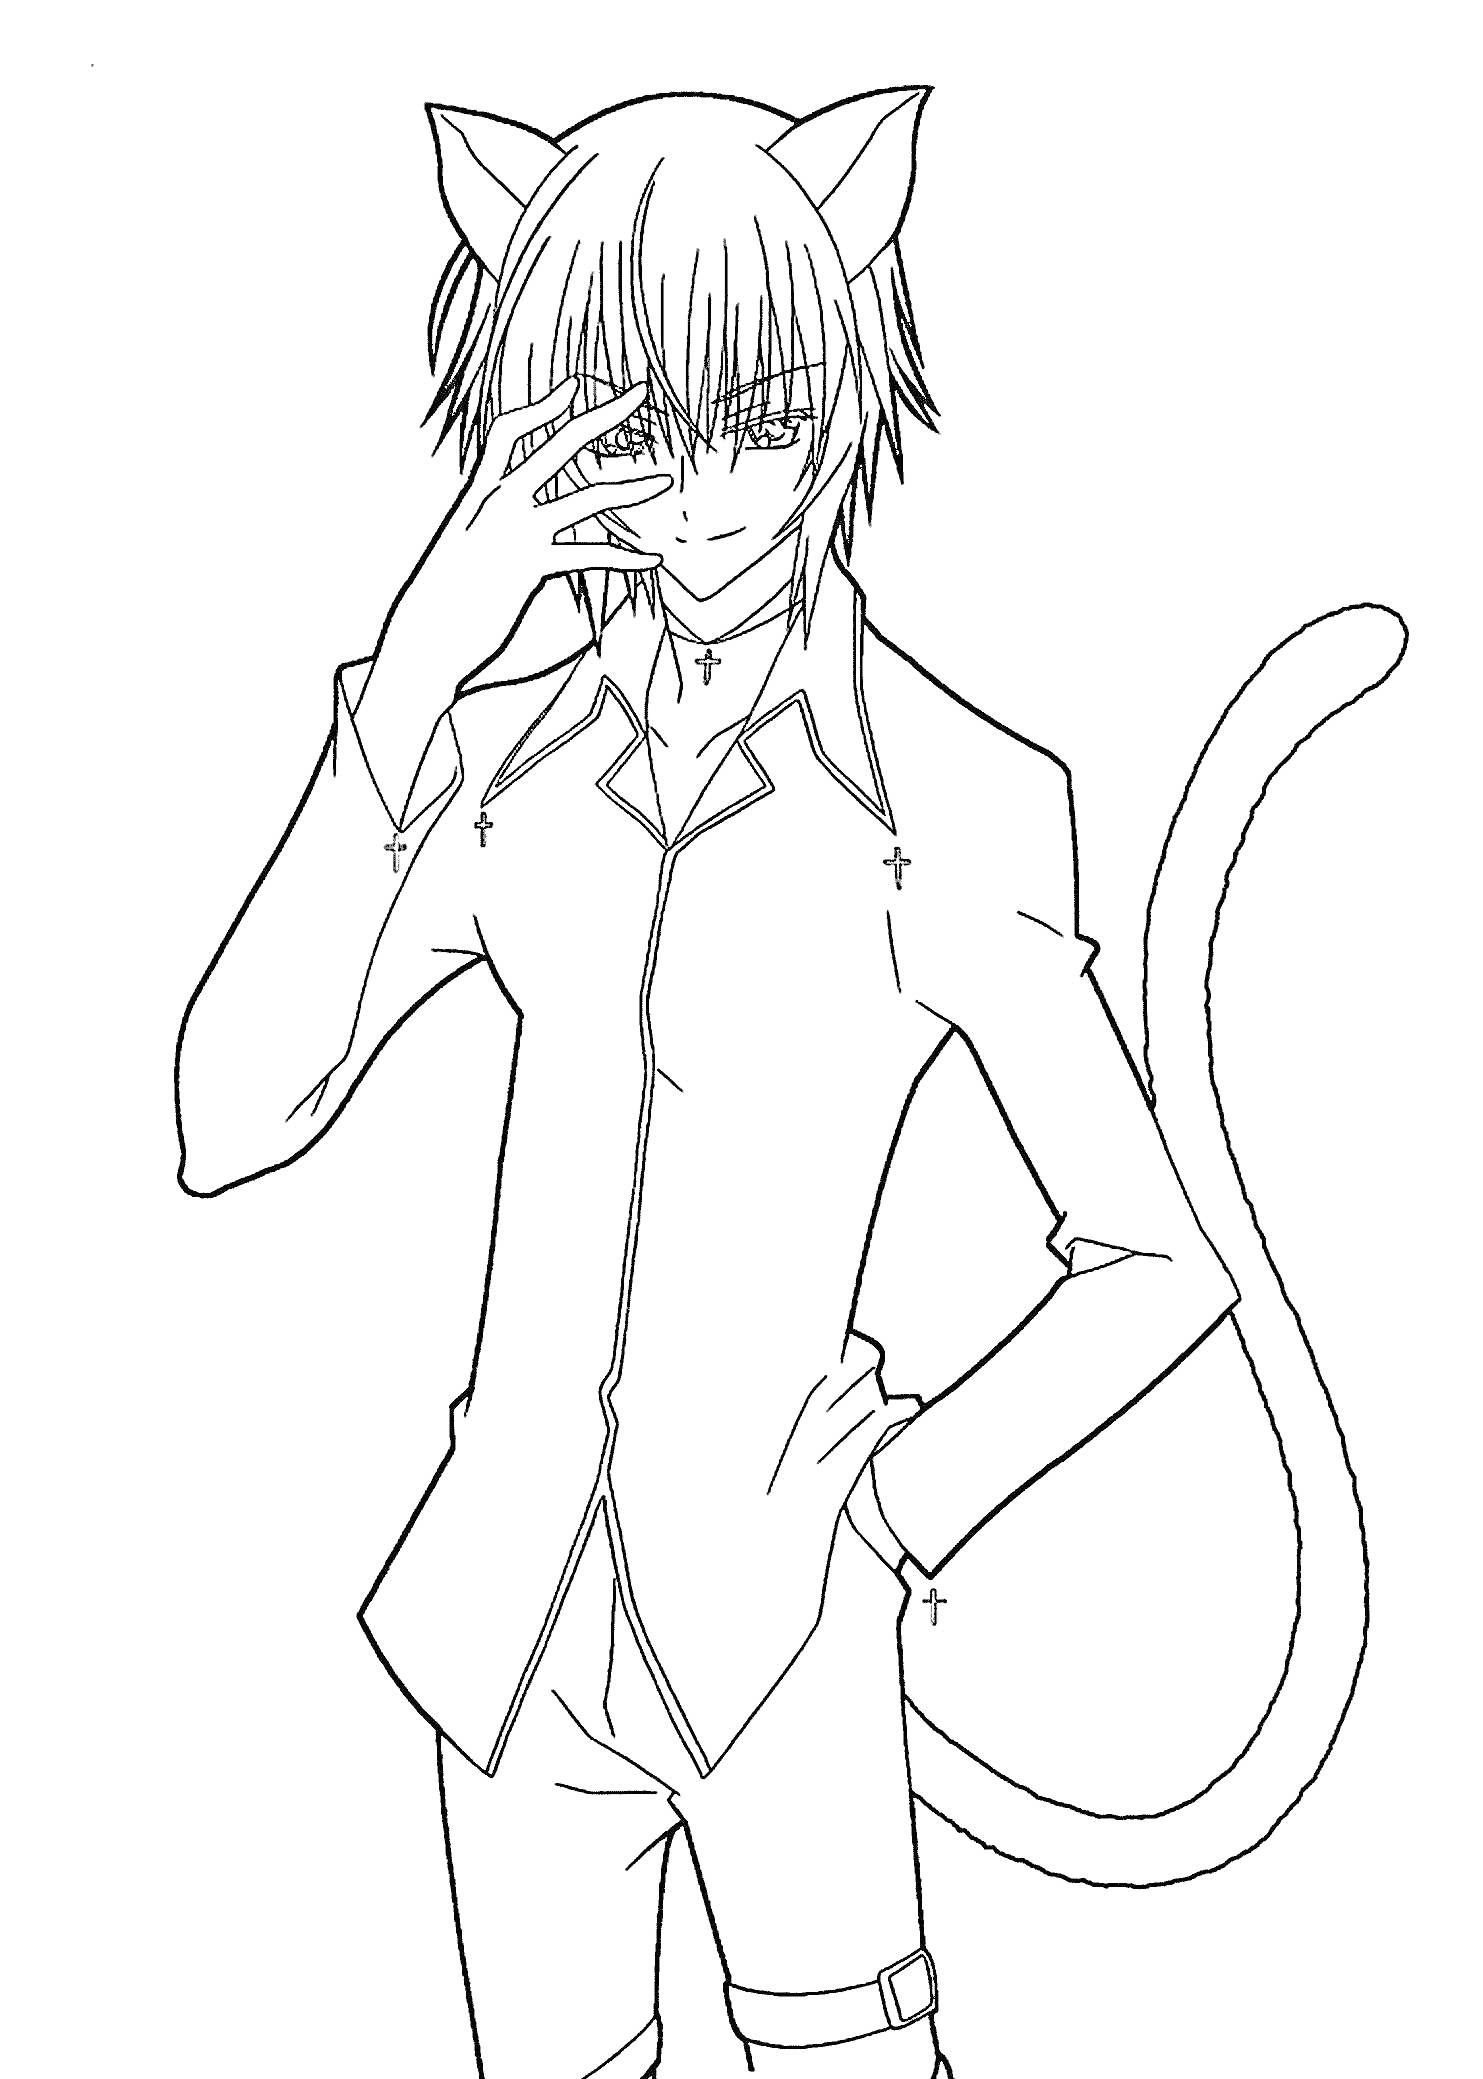 Раскраска Аниме персонаж с кошачьими ушами и хвостом, в рубашке с длинным рукавом, поза с рукой на лице